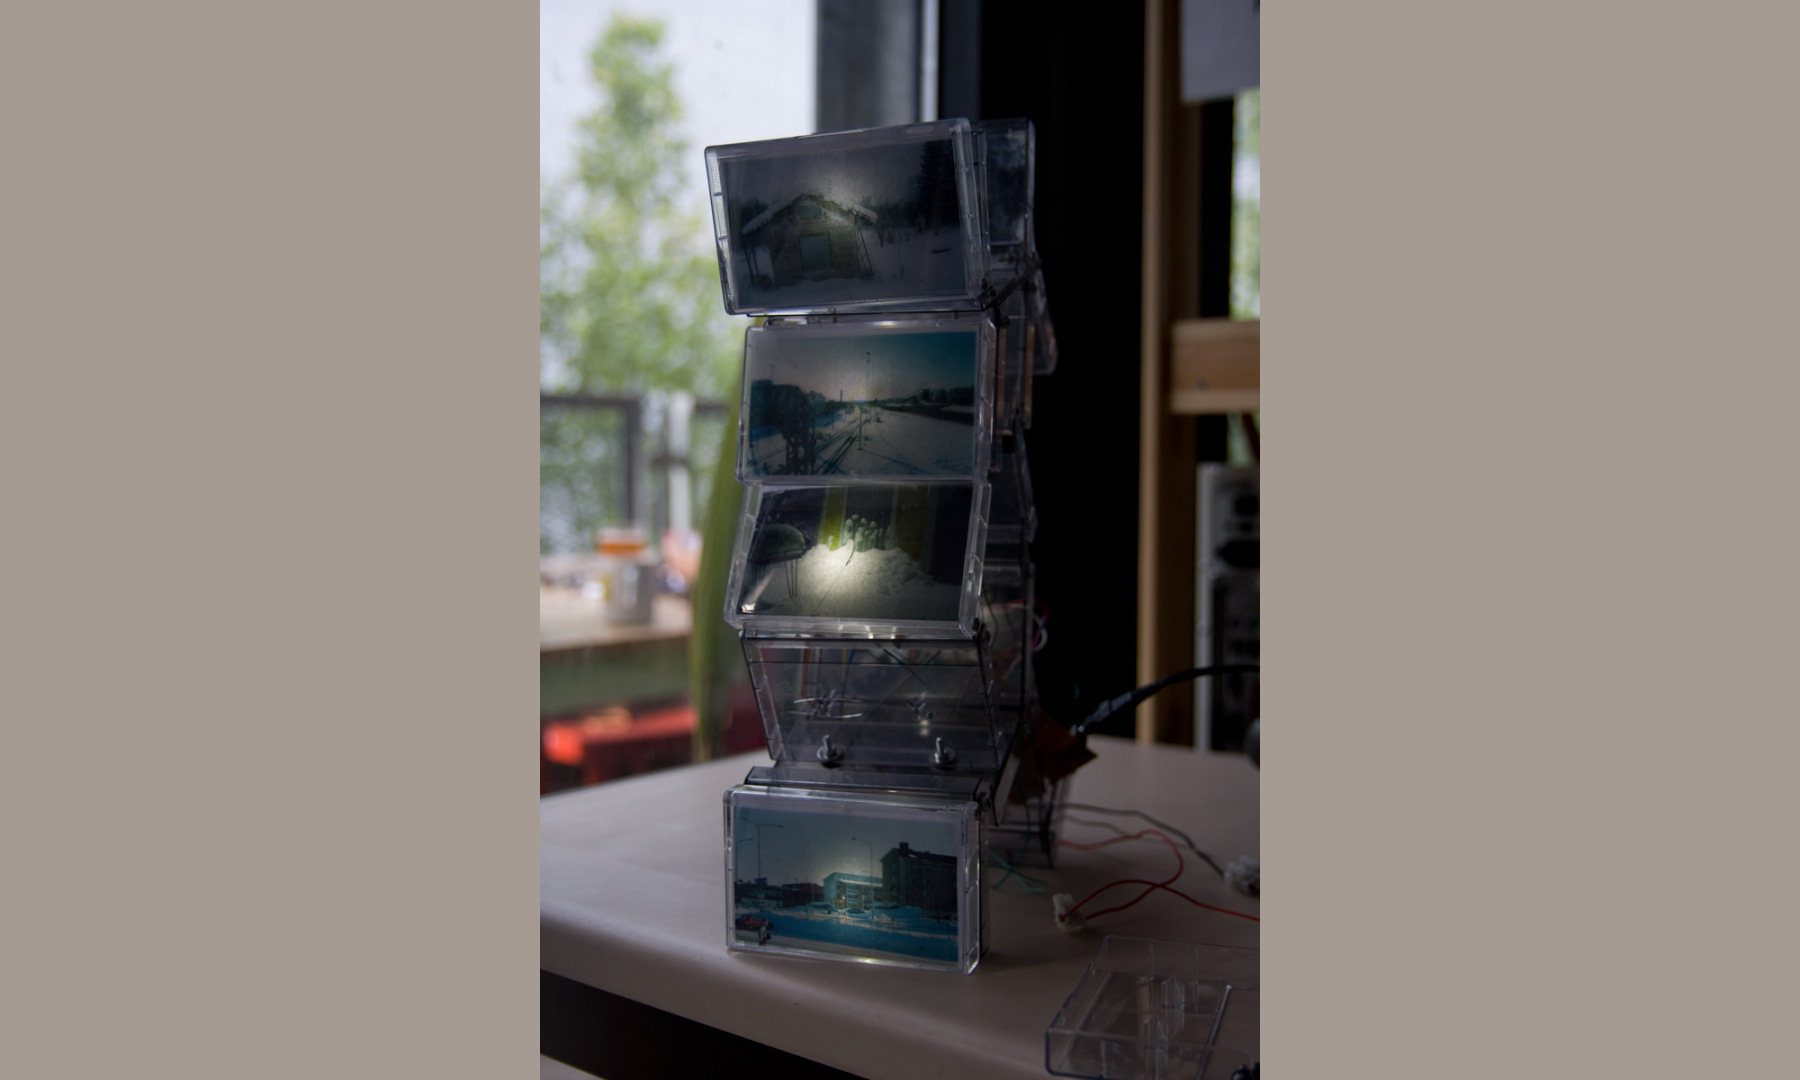 Do you remember snow - music cassette cases sculpture by Dominik Jais